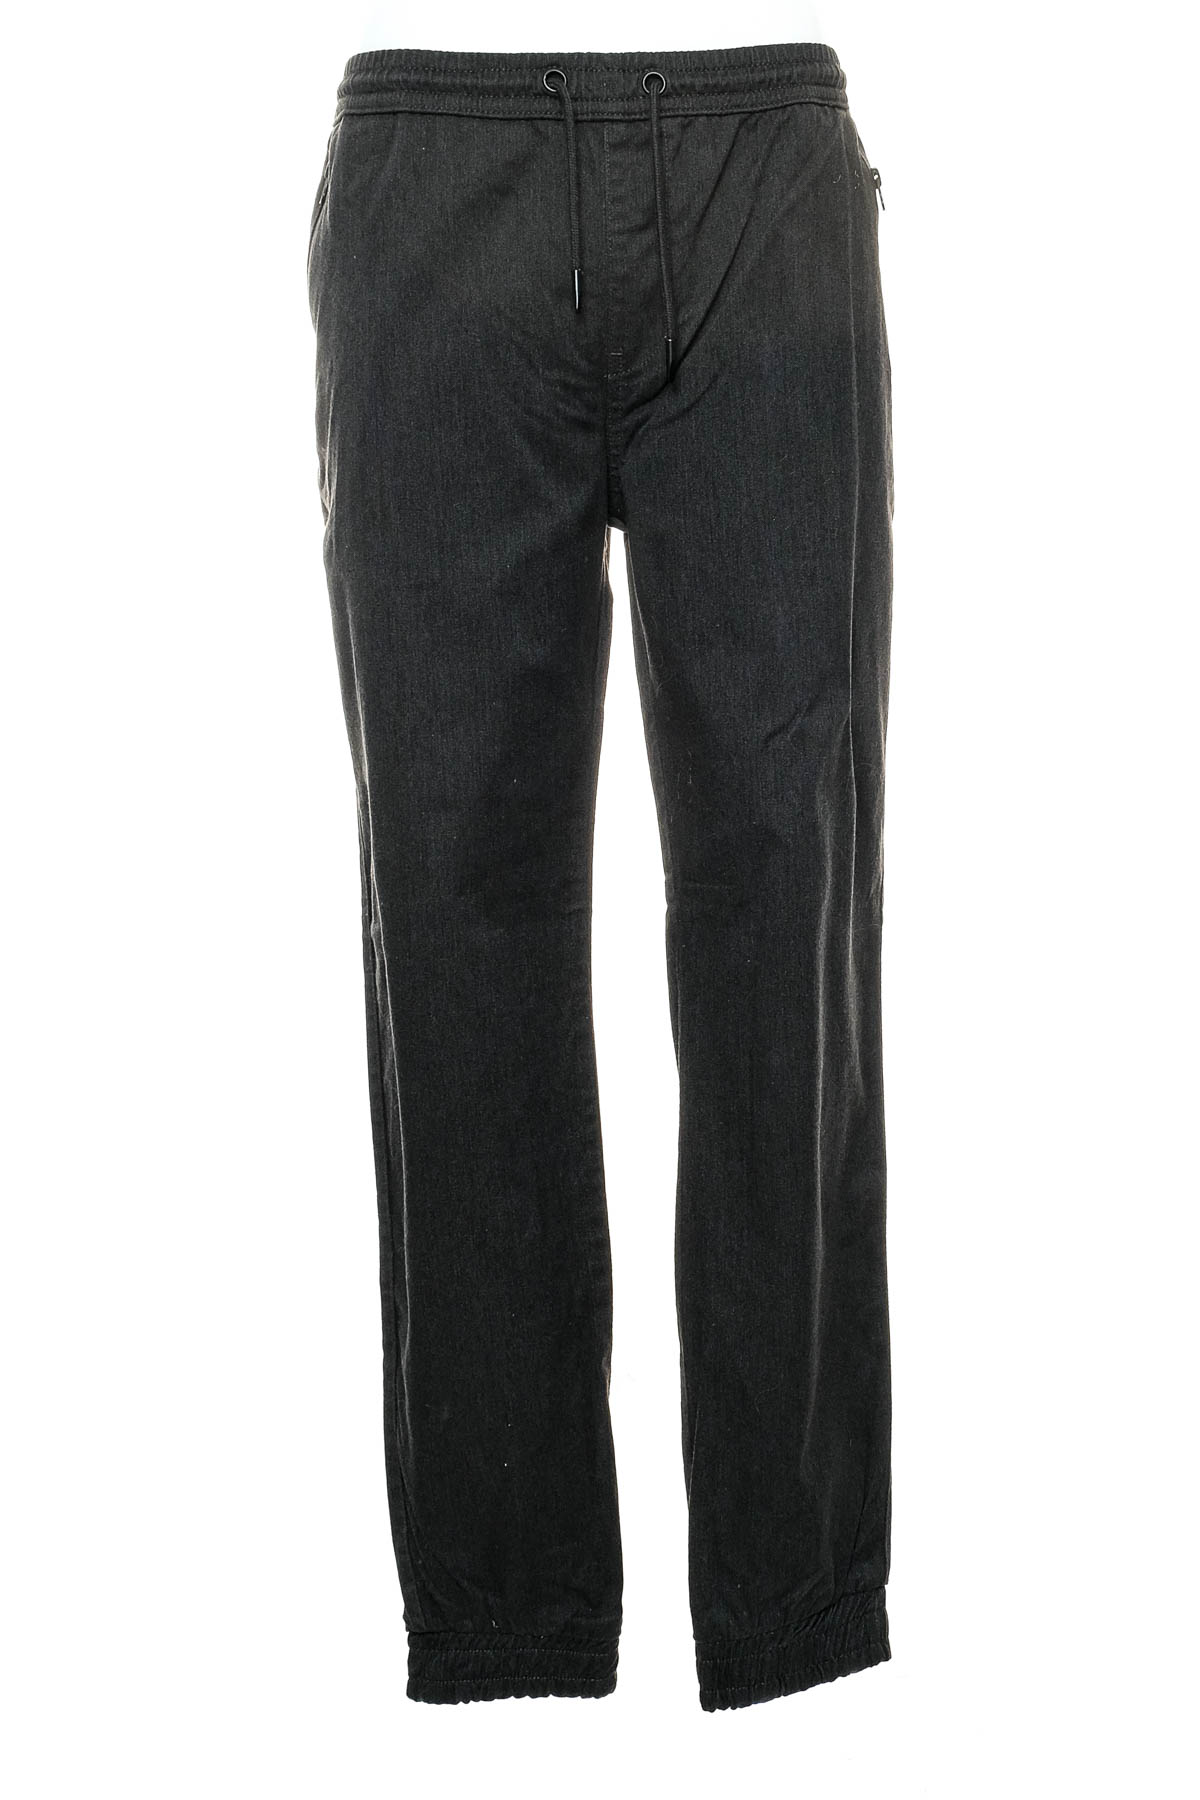 Pantalon pentru bărbați - Denim 1982 - 0